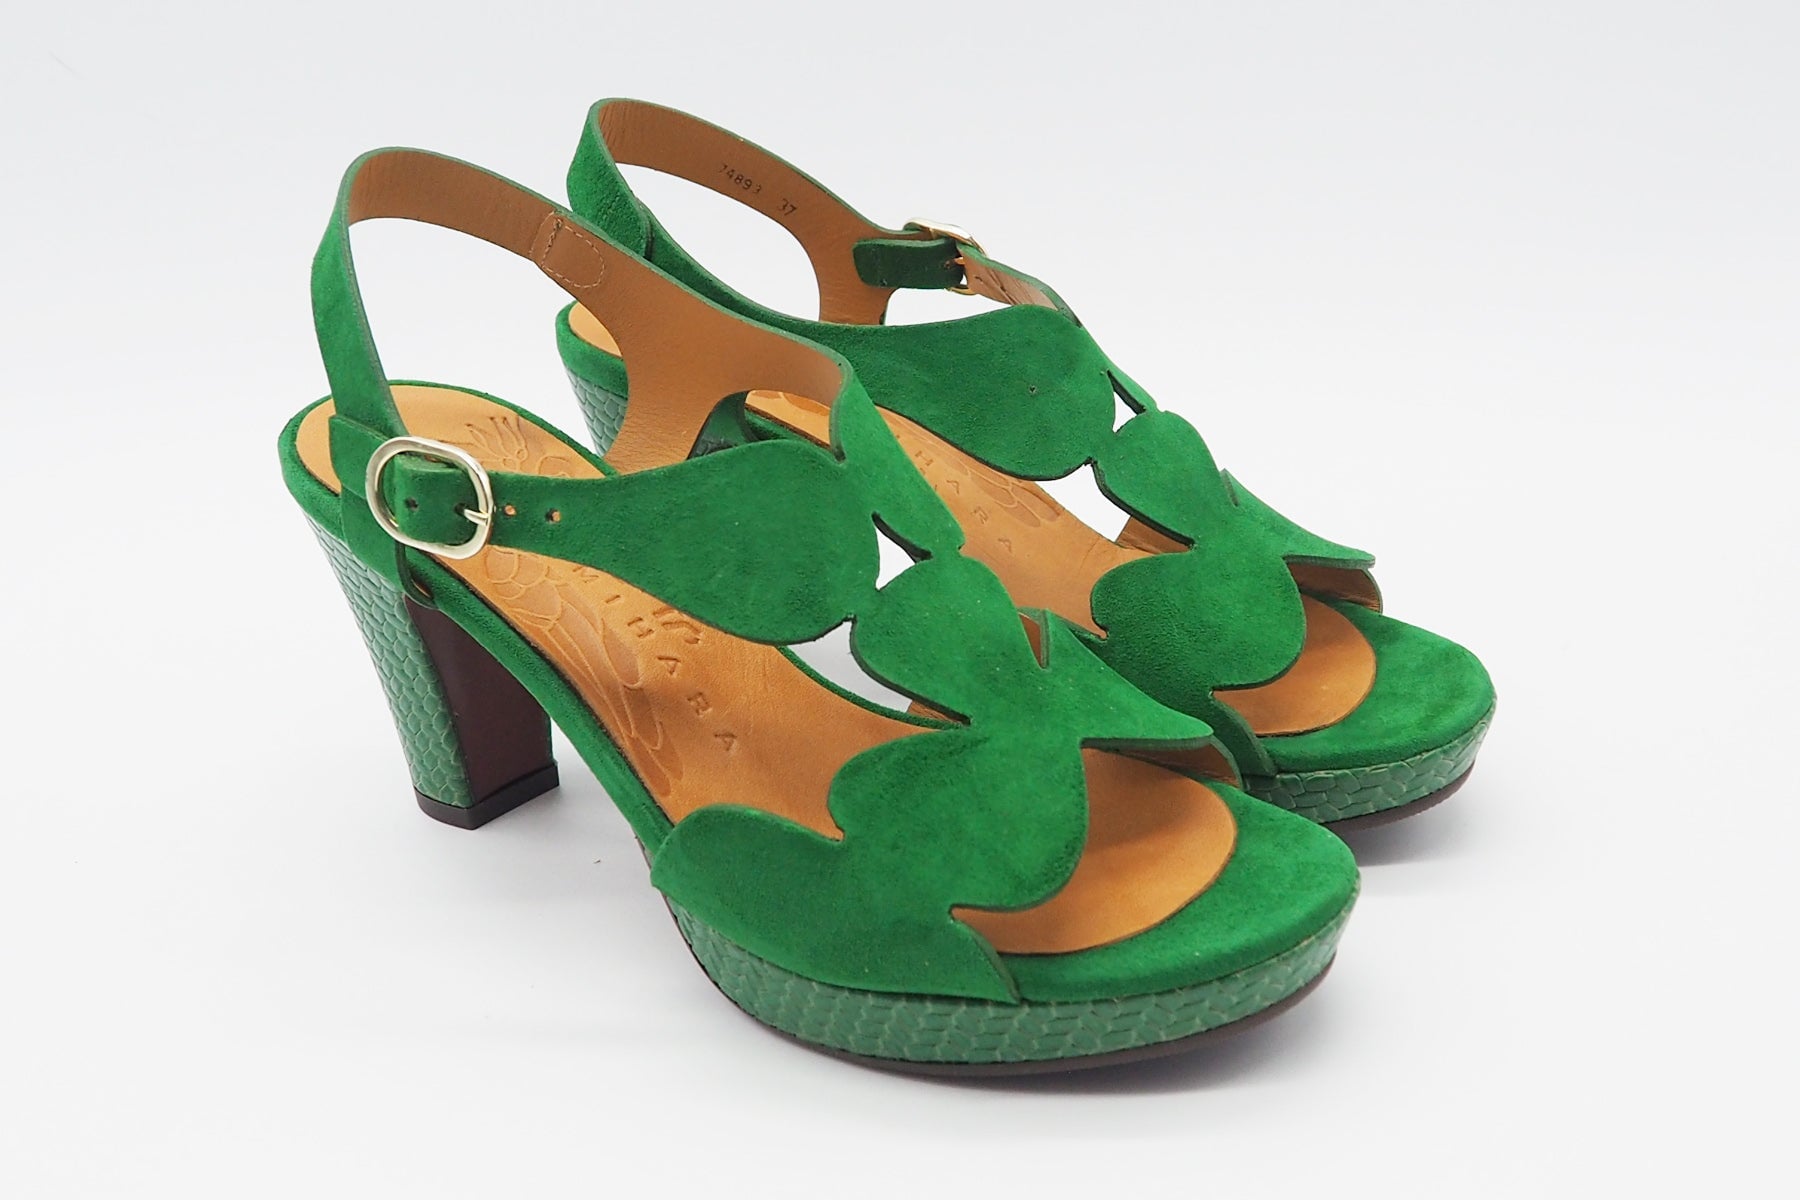 Damen Sandale aus Veloursleder in Grün - Absatz 8cm Damen Sandalen Chie Mihara 